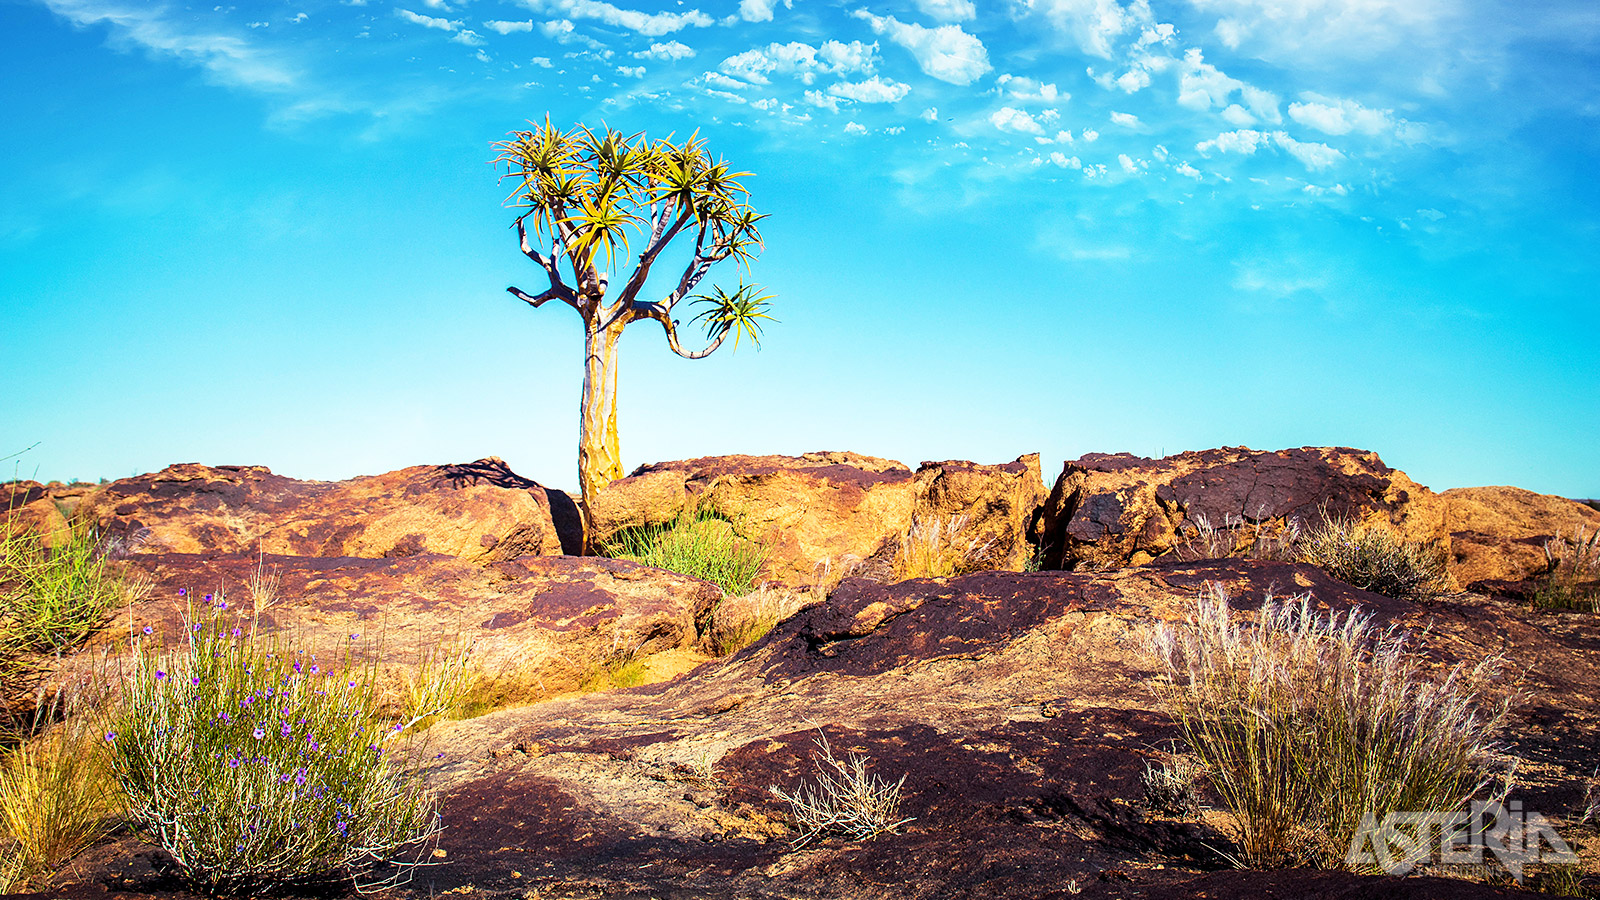 De Karoo is een droog gebied met eindeloze vlaktes en imponerende bergen dat bijna 1/3 van de totale oppervlakte van Zuid-Afrika beslaat